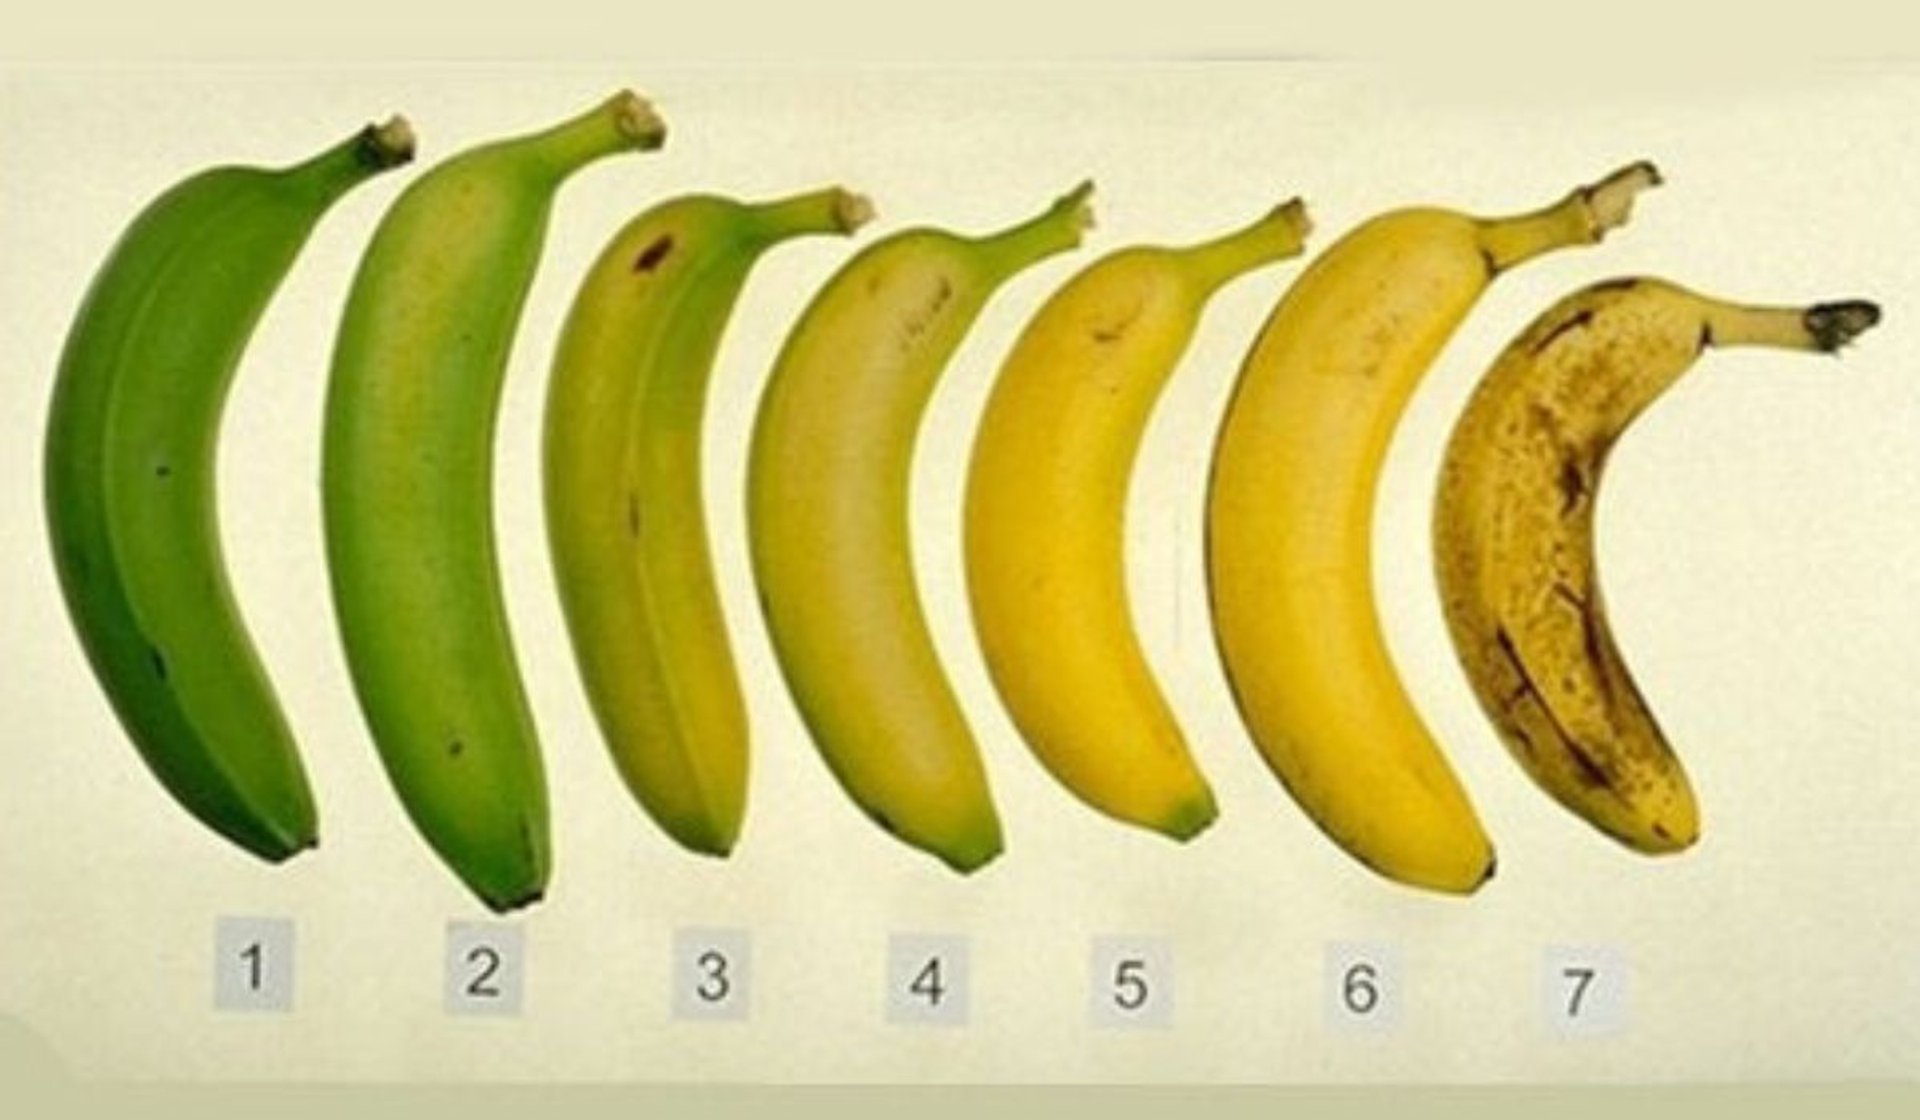 Który z bananów ze zdjęcia jest najzdrowszy? Większość osób nie zgaduje za pierwszym razem